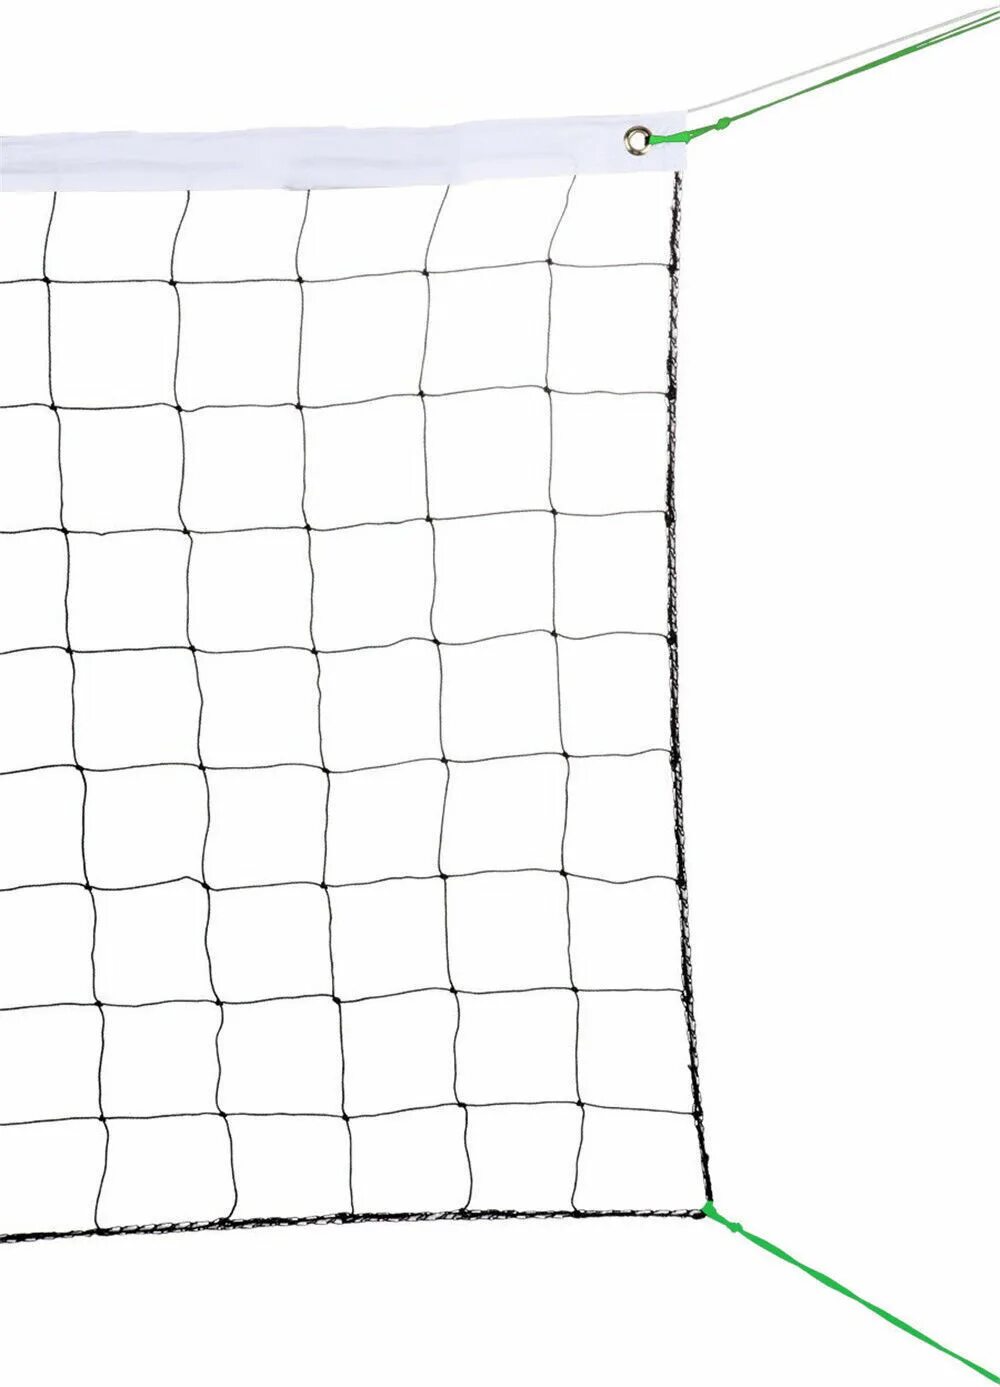 Волейбольная сетка Volleyball net. Волейбольная сетка на белом фоне. Чехол для волейбольной сетки. Сетка для волейбола.